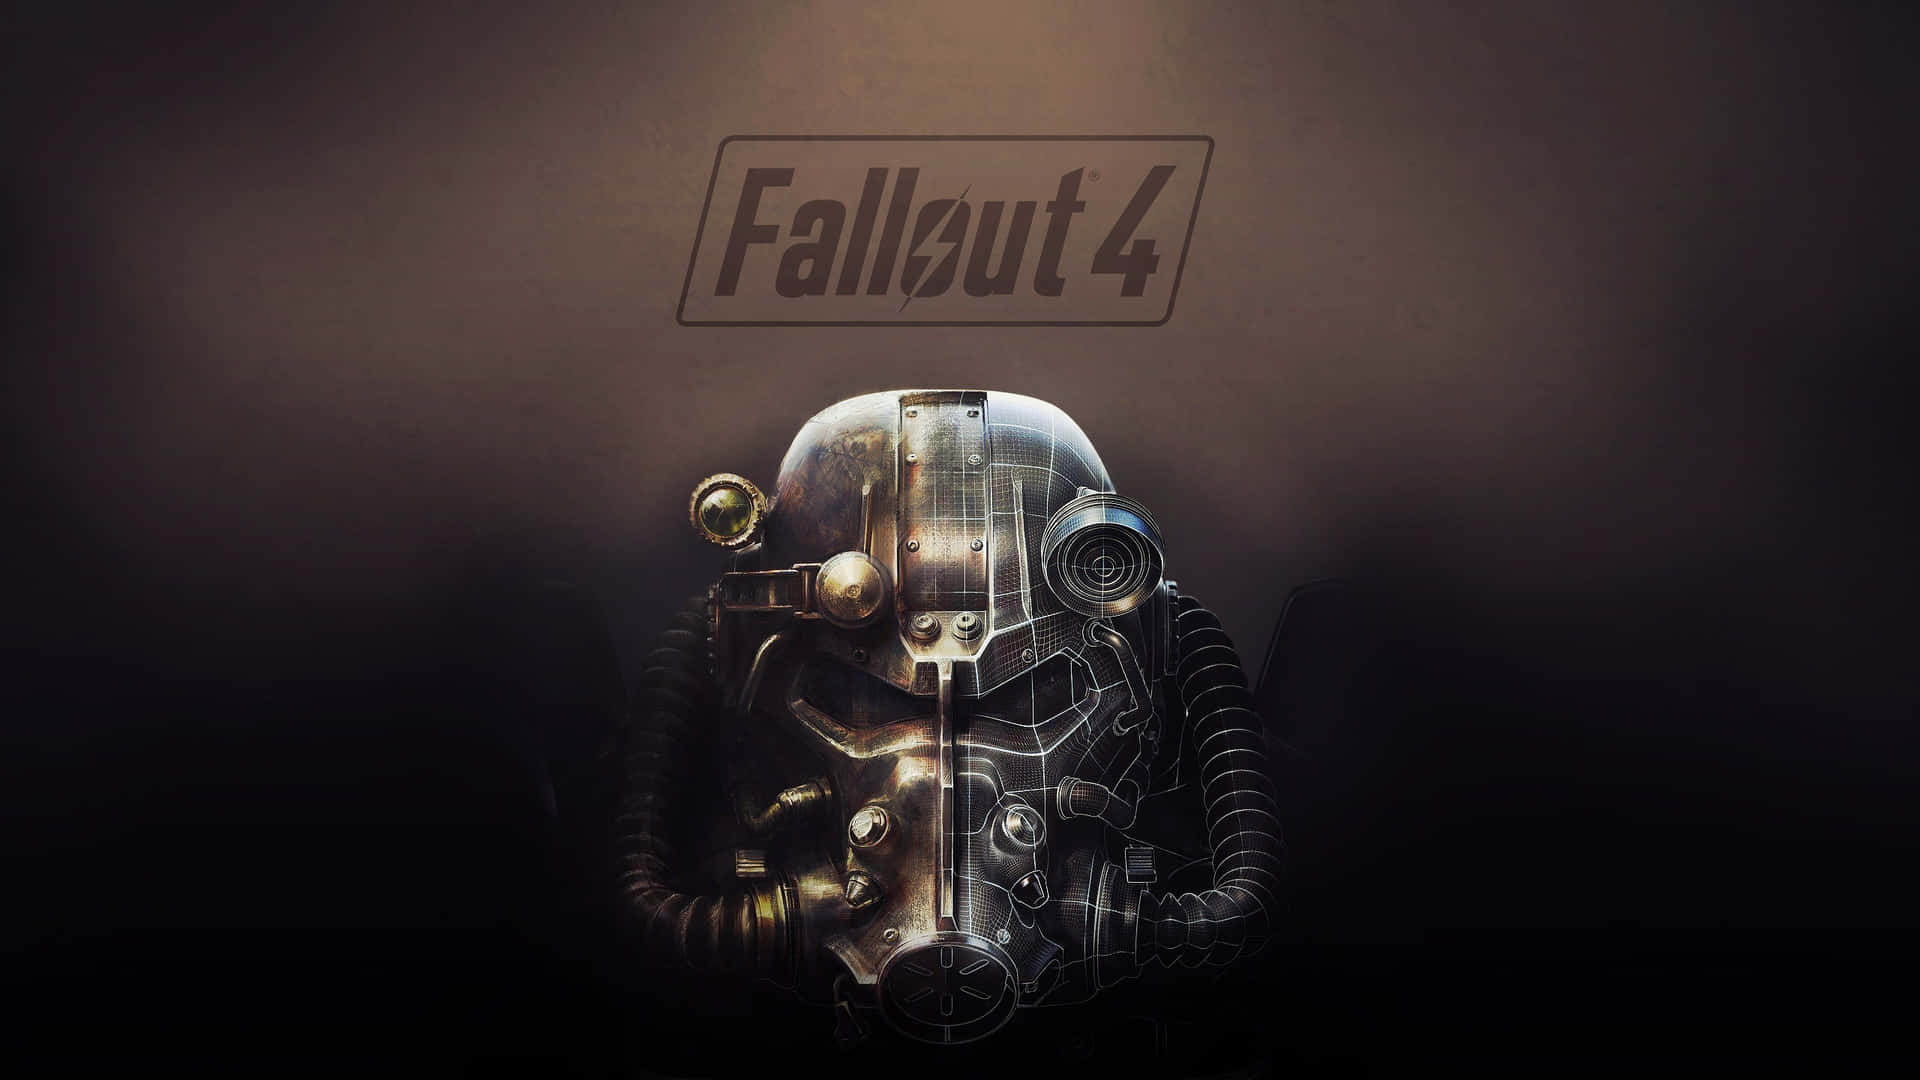 Papelde Parede Do Fallout 4 - Papel De Parede Do Fallout 4 Papel de Parede